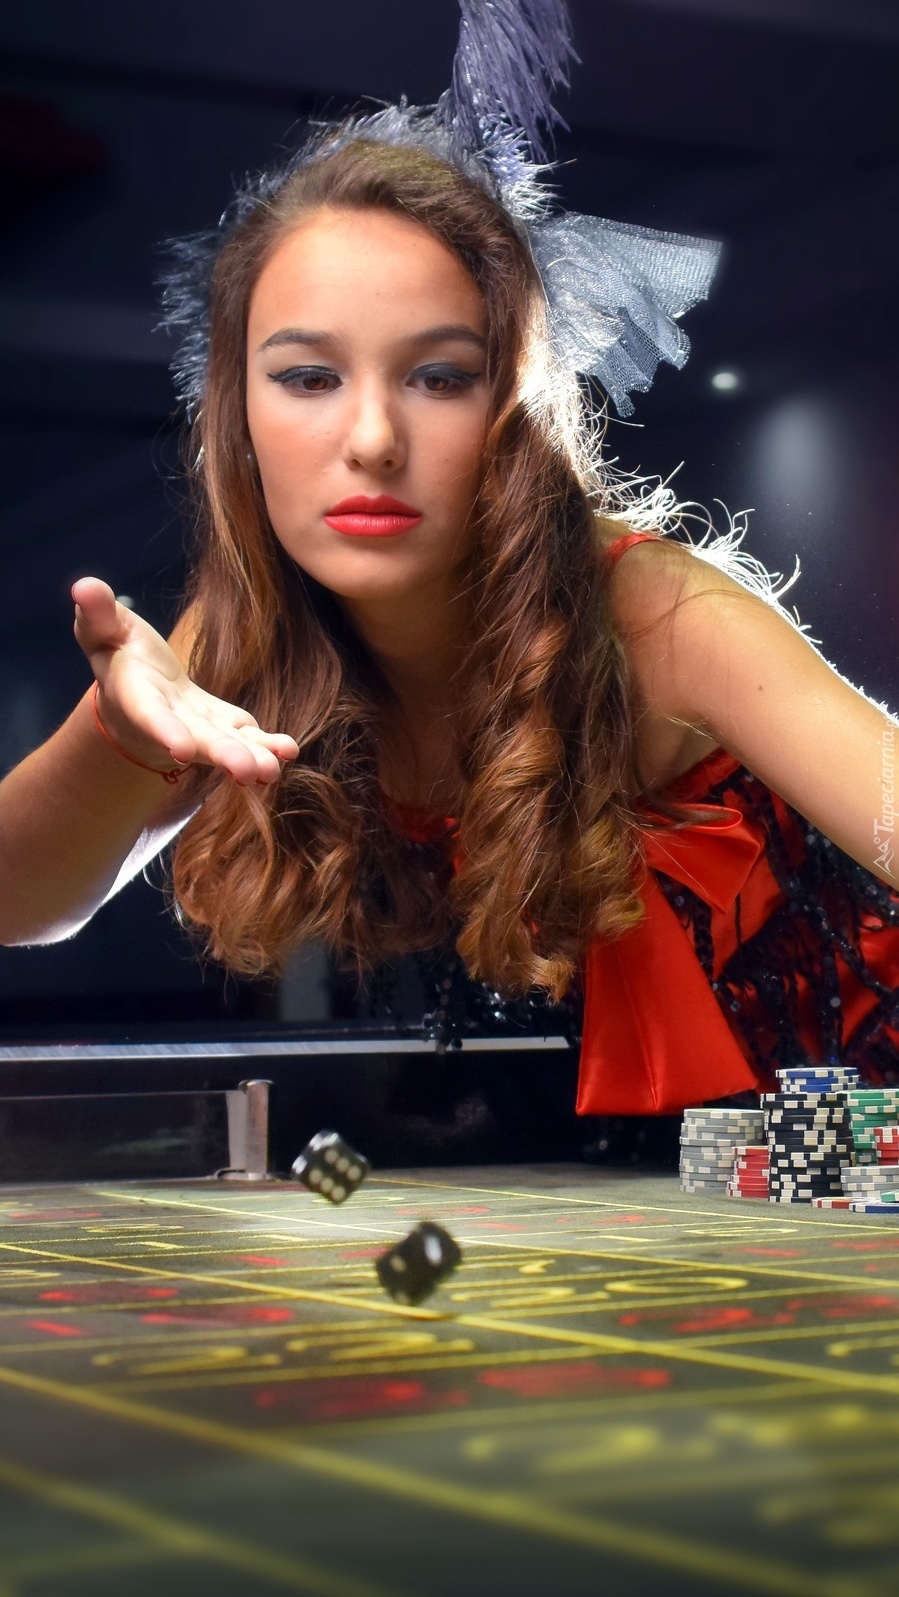 Kobieta rzuca kośćmi w kasynie